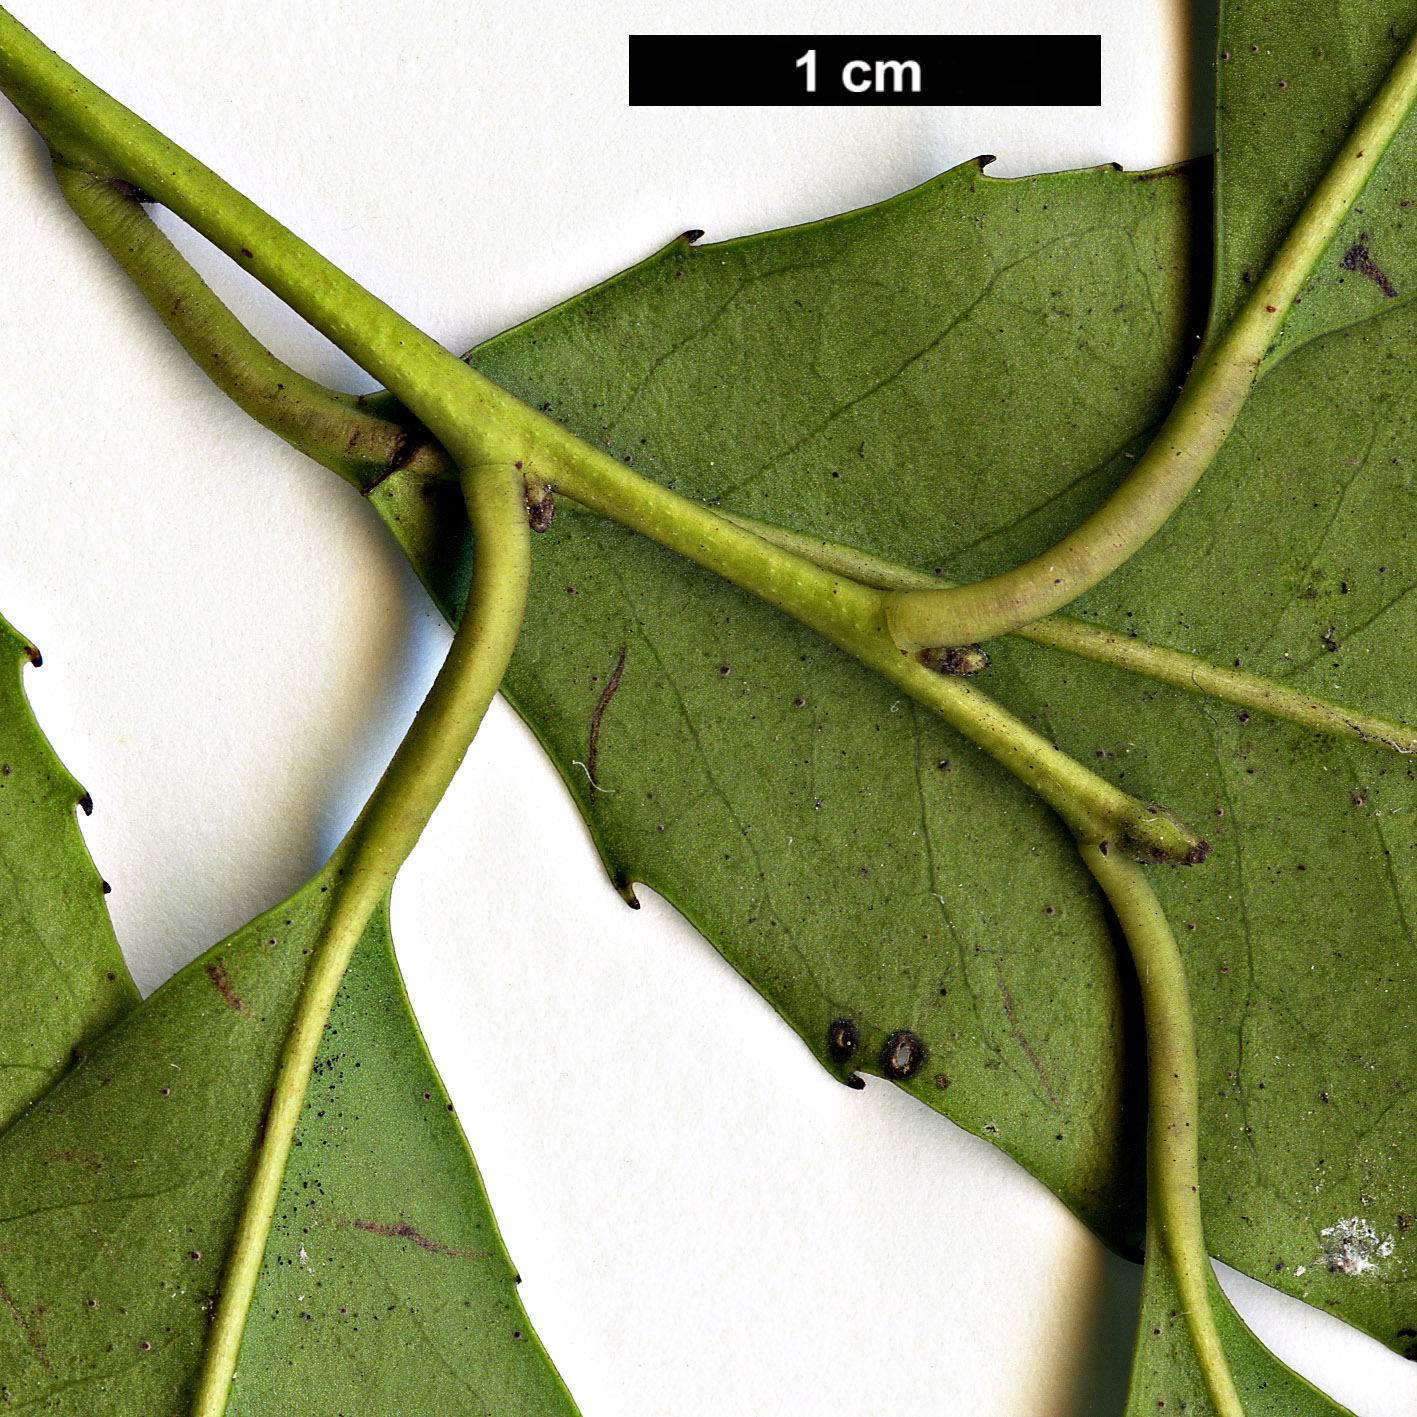 High resolution image: Family: Aquifoliaceae - Genus: Ilex - Taxon: corallina